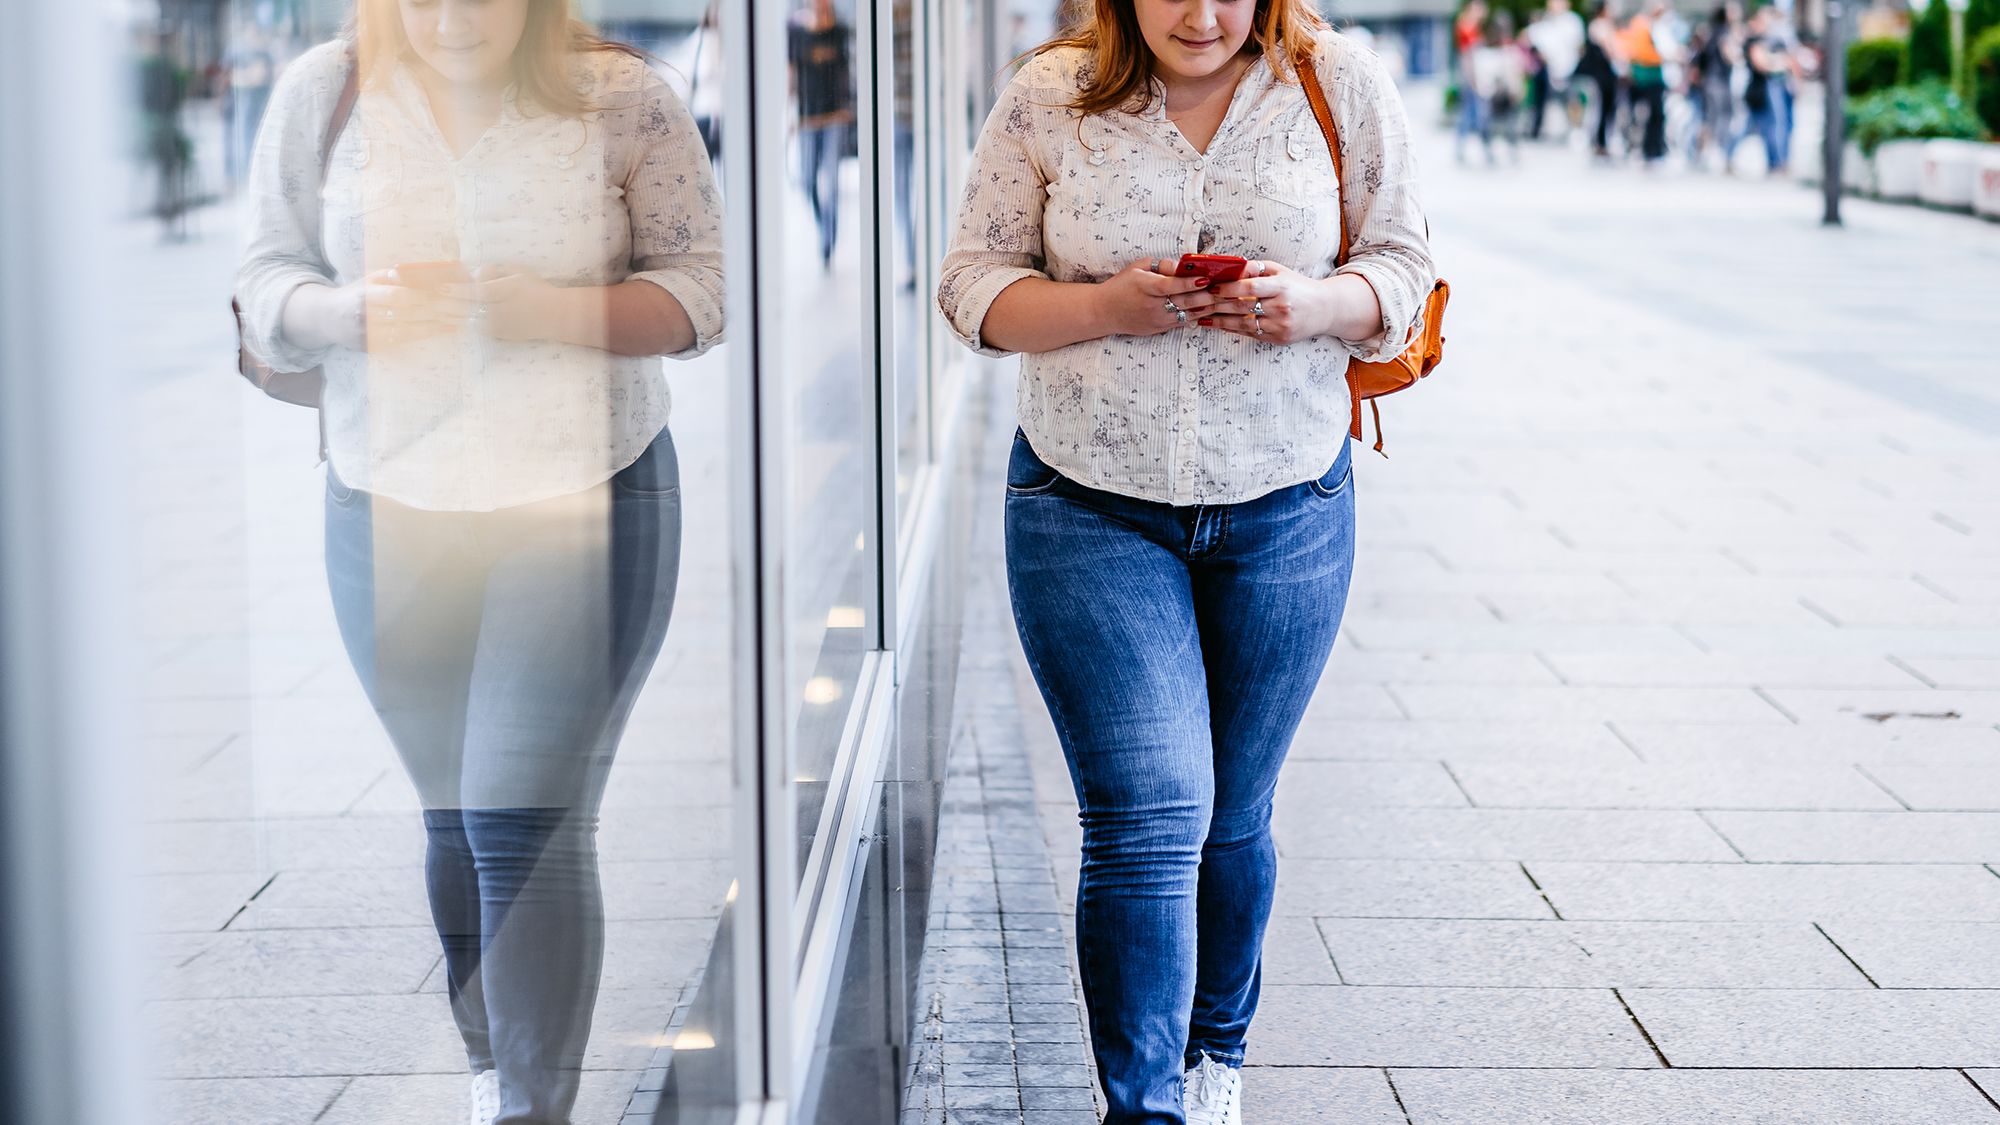 BMI tells teen she's obese; here's what she said